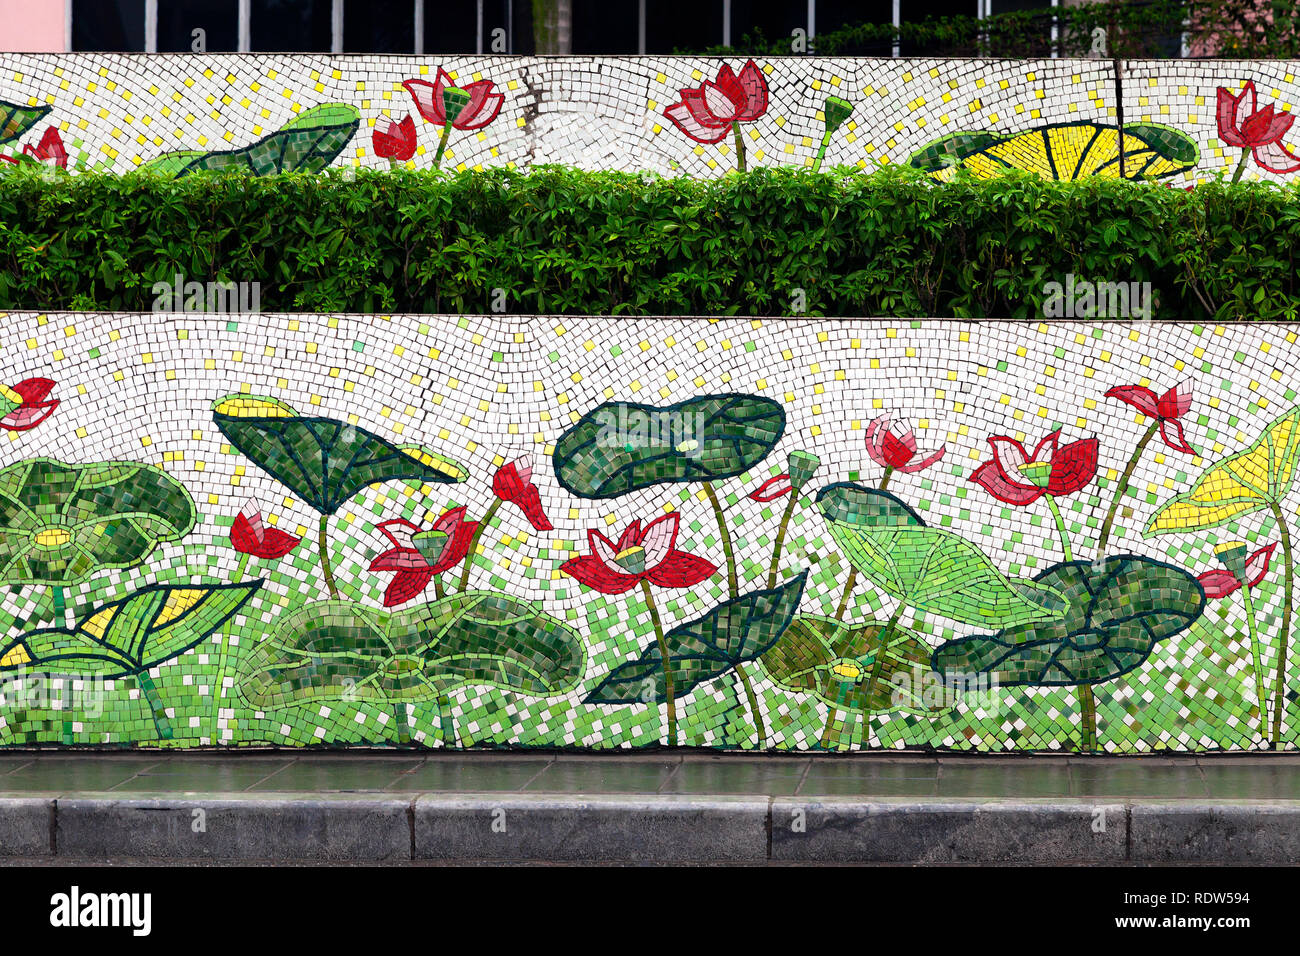 Hanoi, Vietnam - 12 janvier 2015 - carreaux de mosaïque murale à Hanoi Banque D'Images